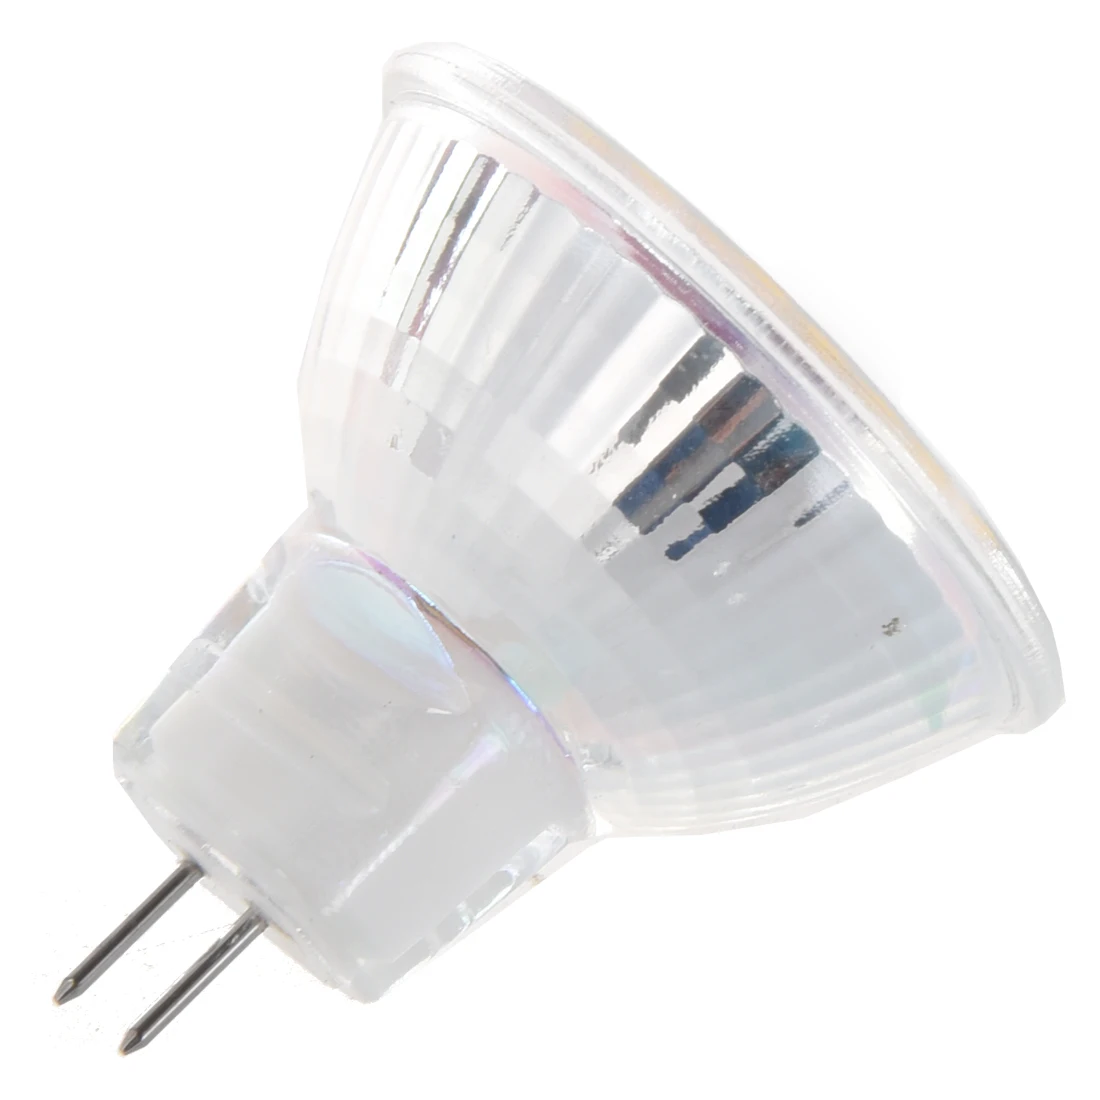 5 x MR11 24 3528 SMD Светодиодный точечный светильник лампы теплый белый 12V